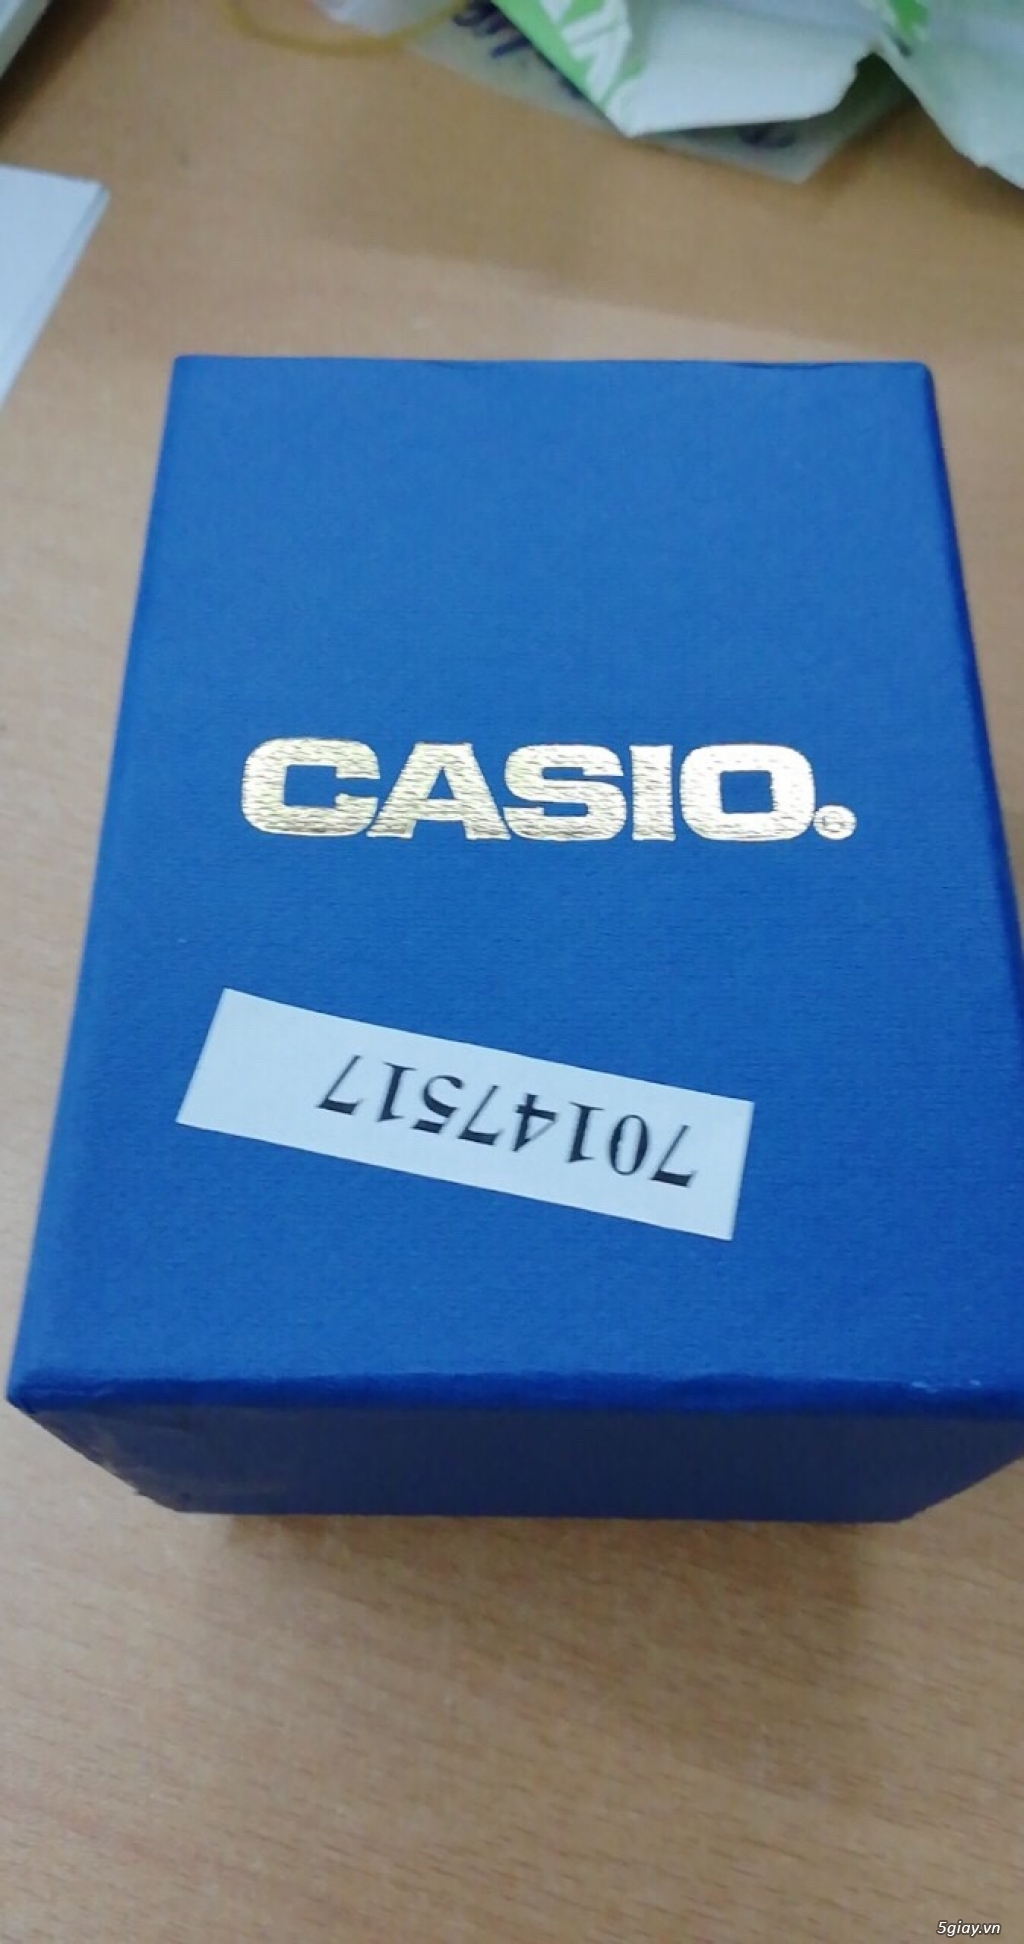 Đồng hồ Casio MQ-38-7A chính hãng, mới 100% End: 23h 25/09/19